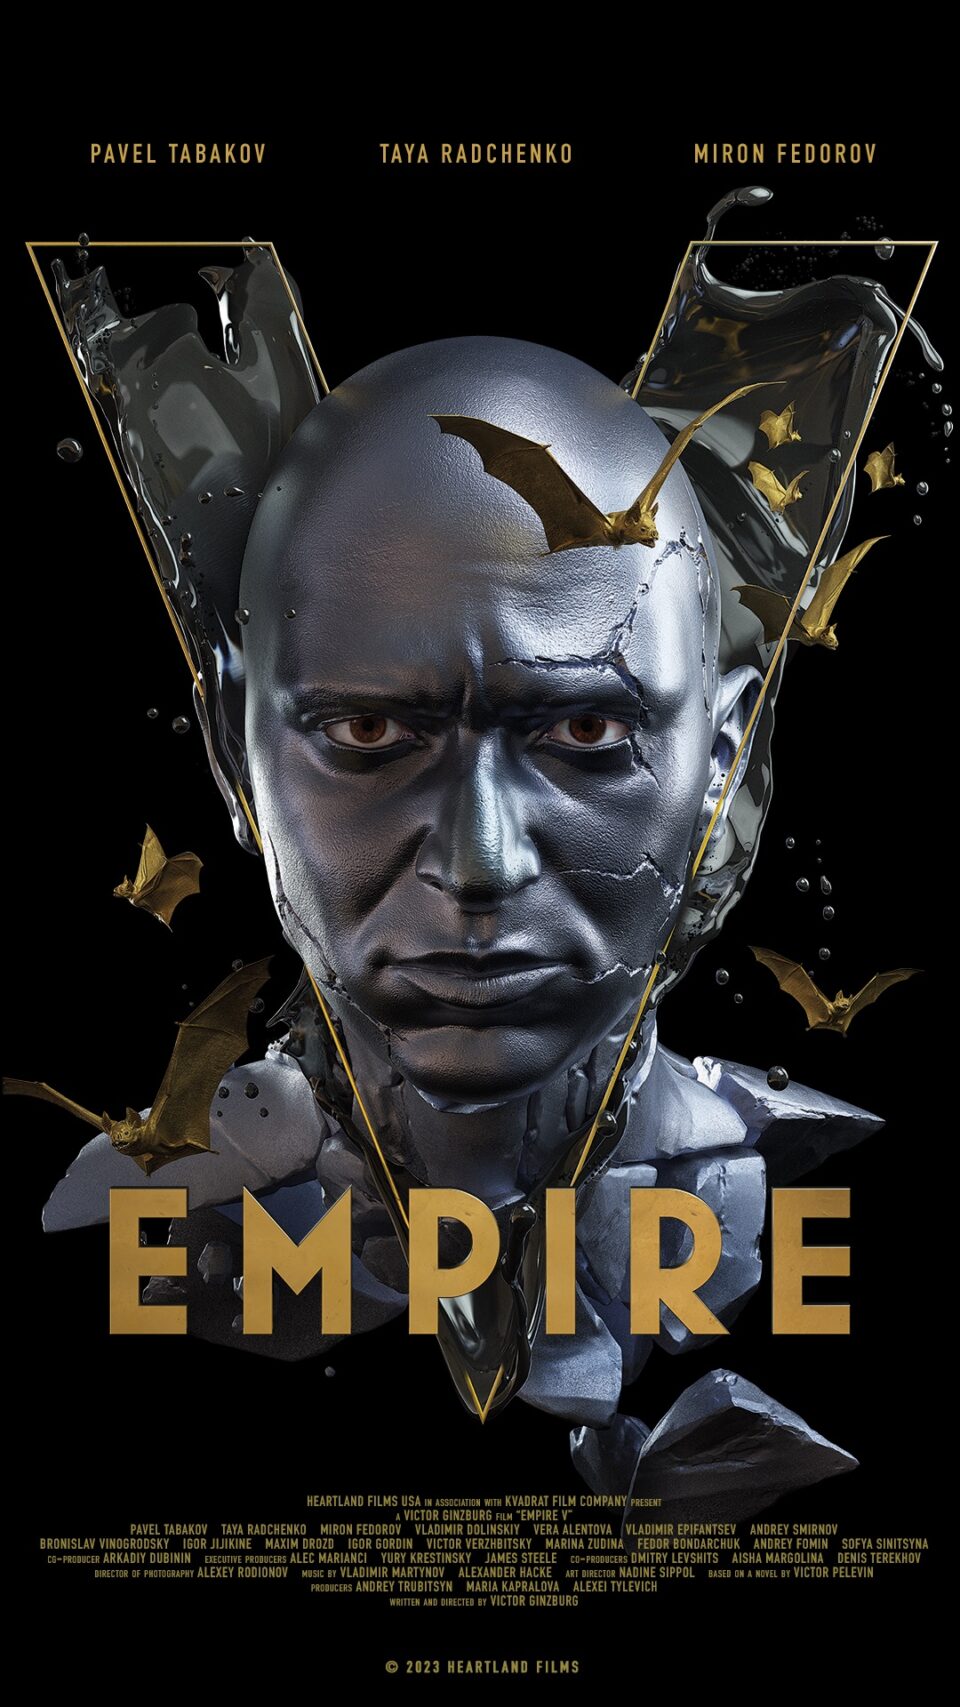 Постер «Империя V» 960x1707 — «Империя V»: посмотрите трейлер скандального российского фильма ужасов